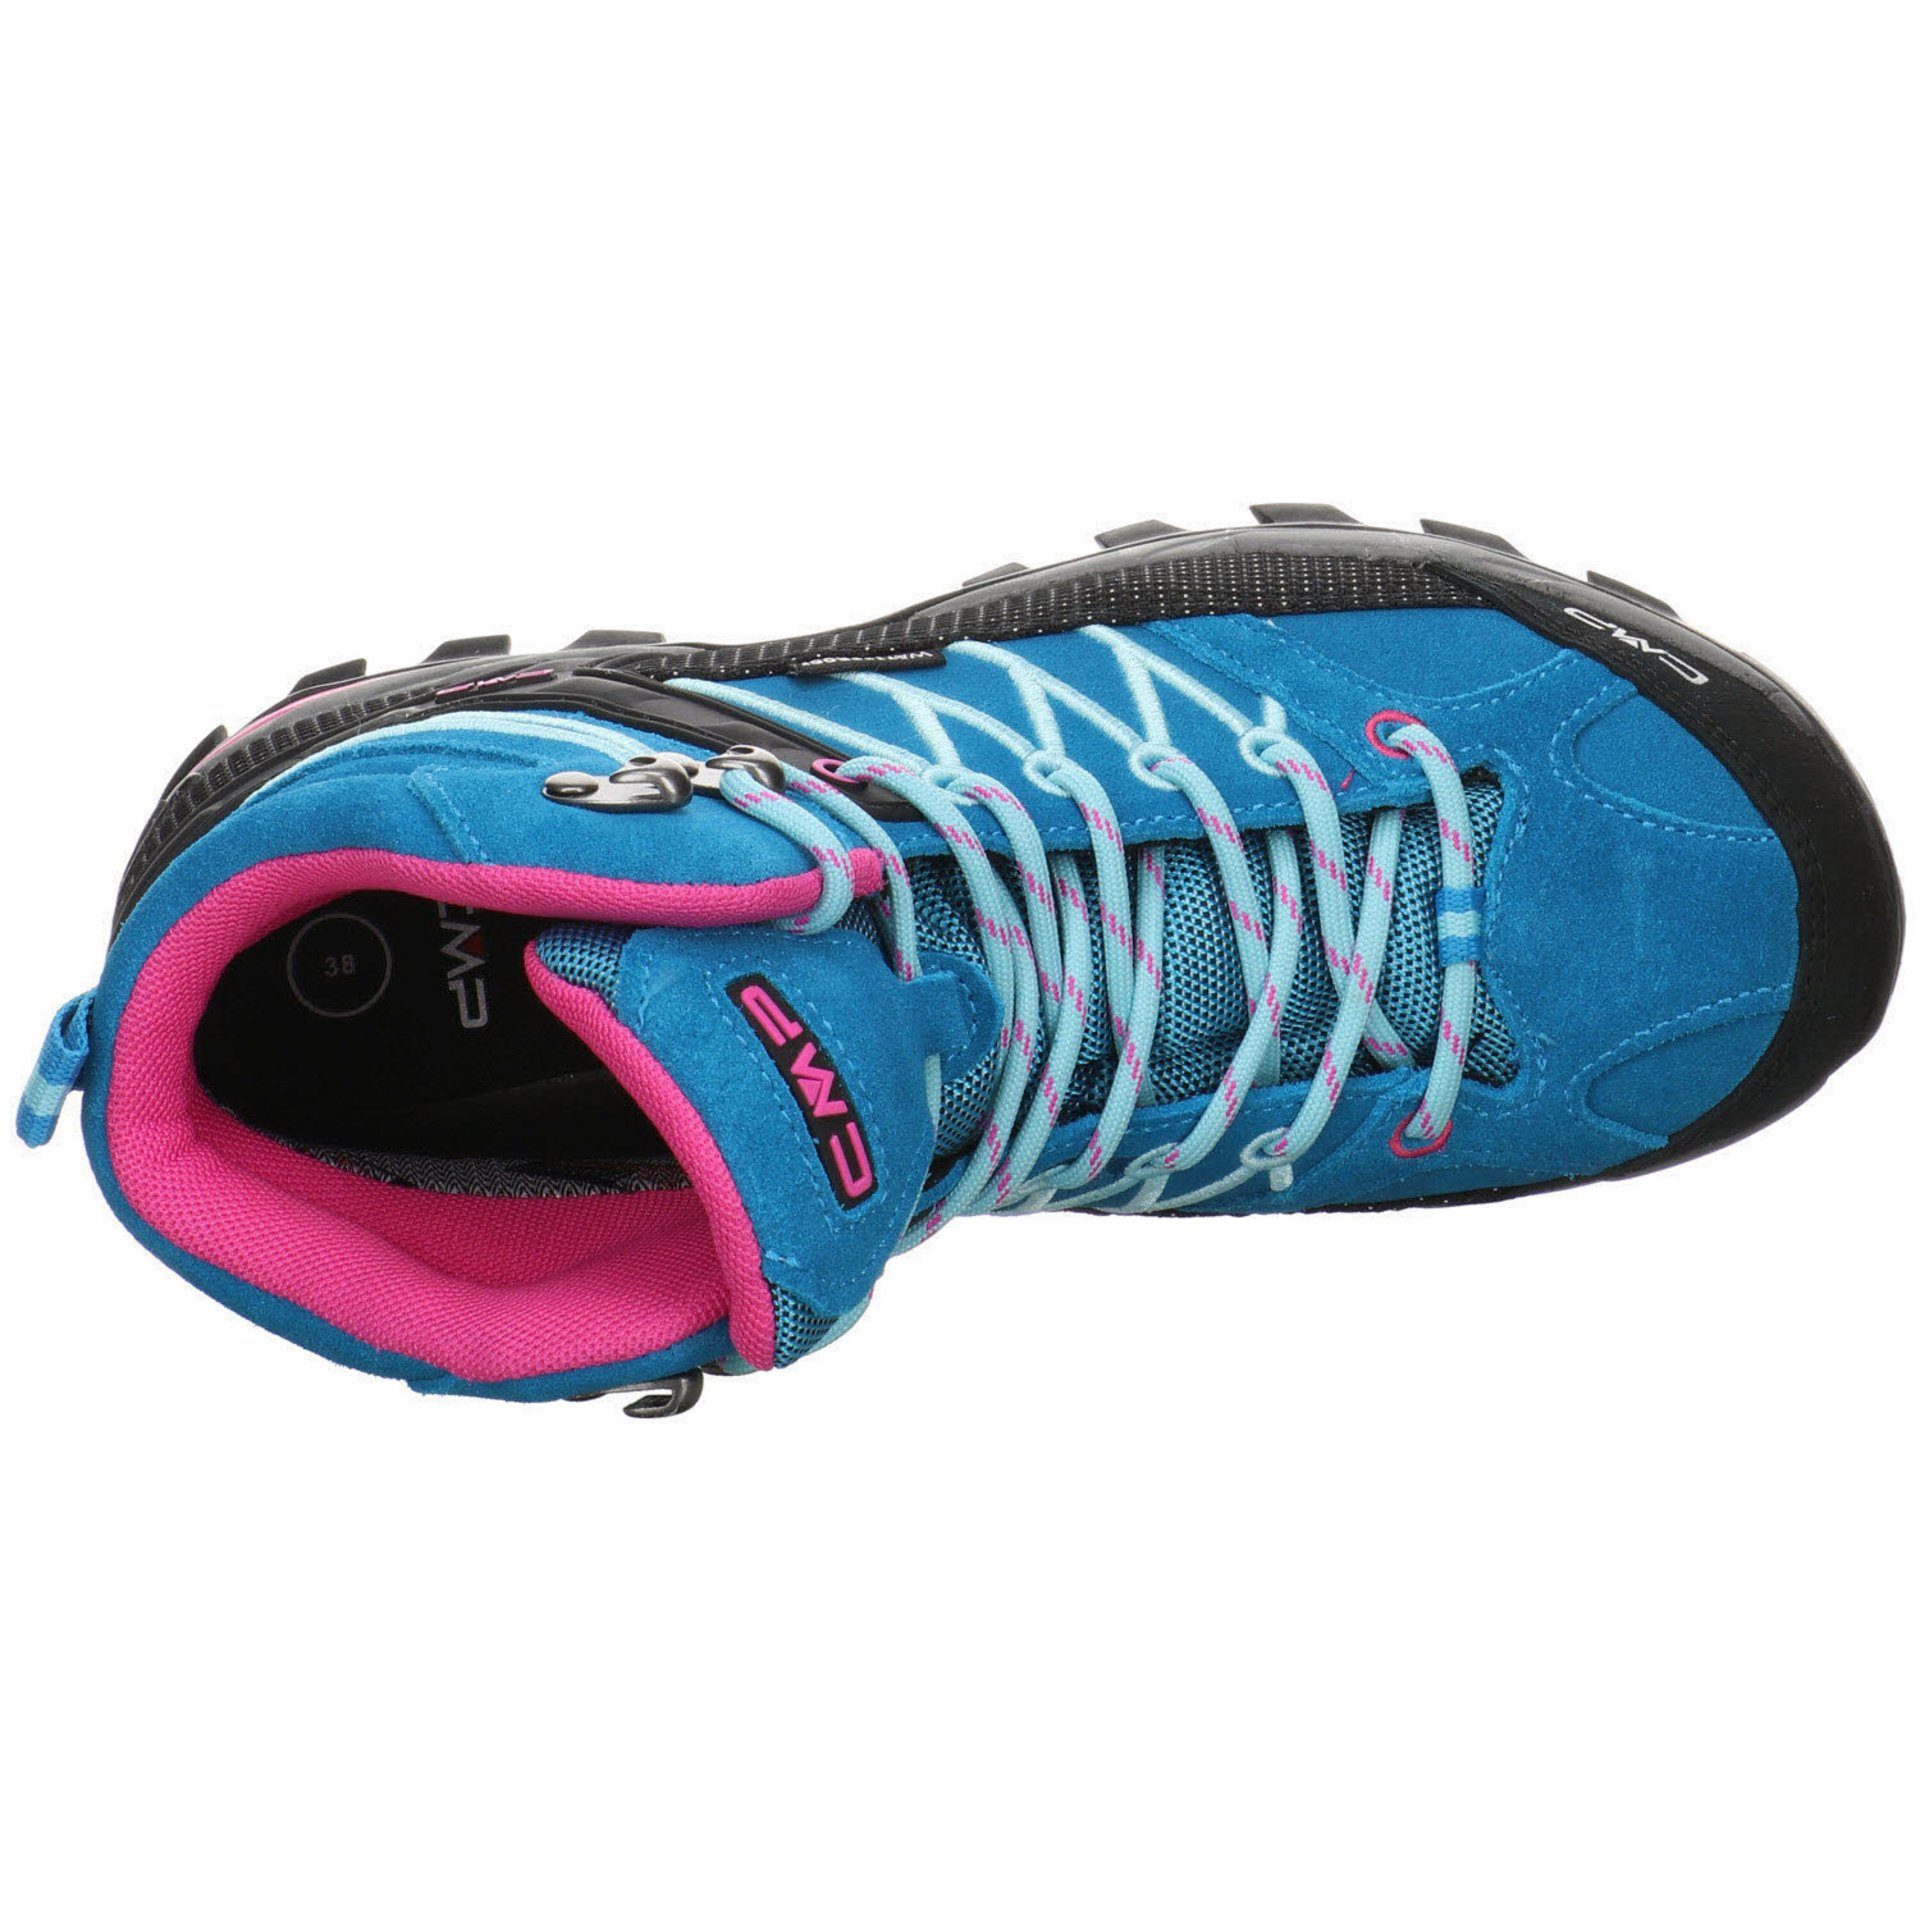 türkis-pink Rigel Damen CMP Outdoorschuh Schuhe Mid Outdoor Outdoorschuh Leder-/Textilkombination